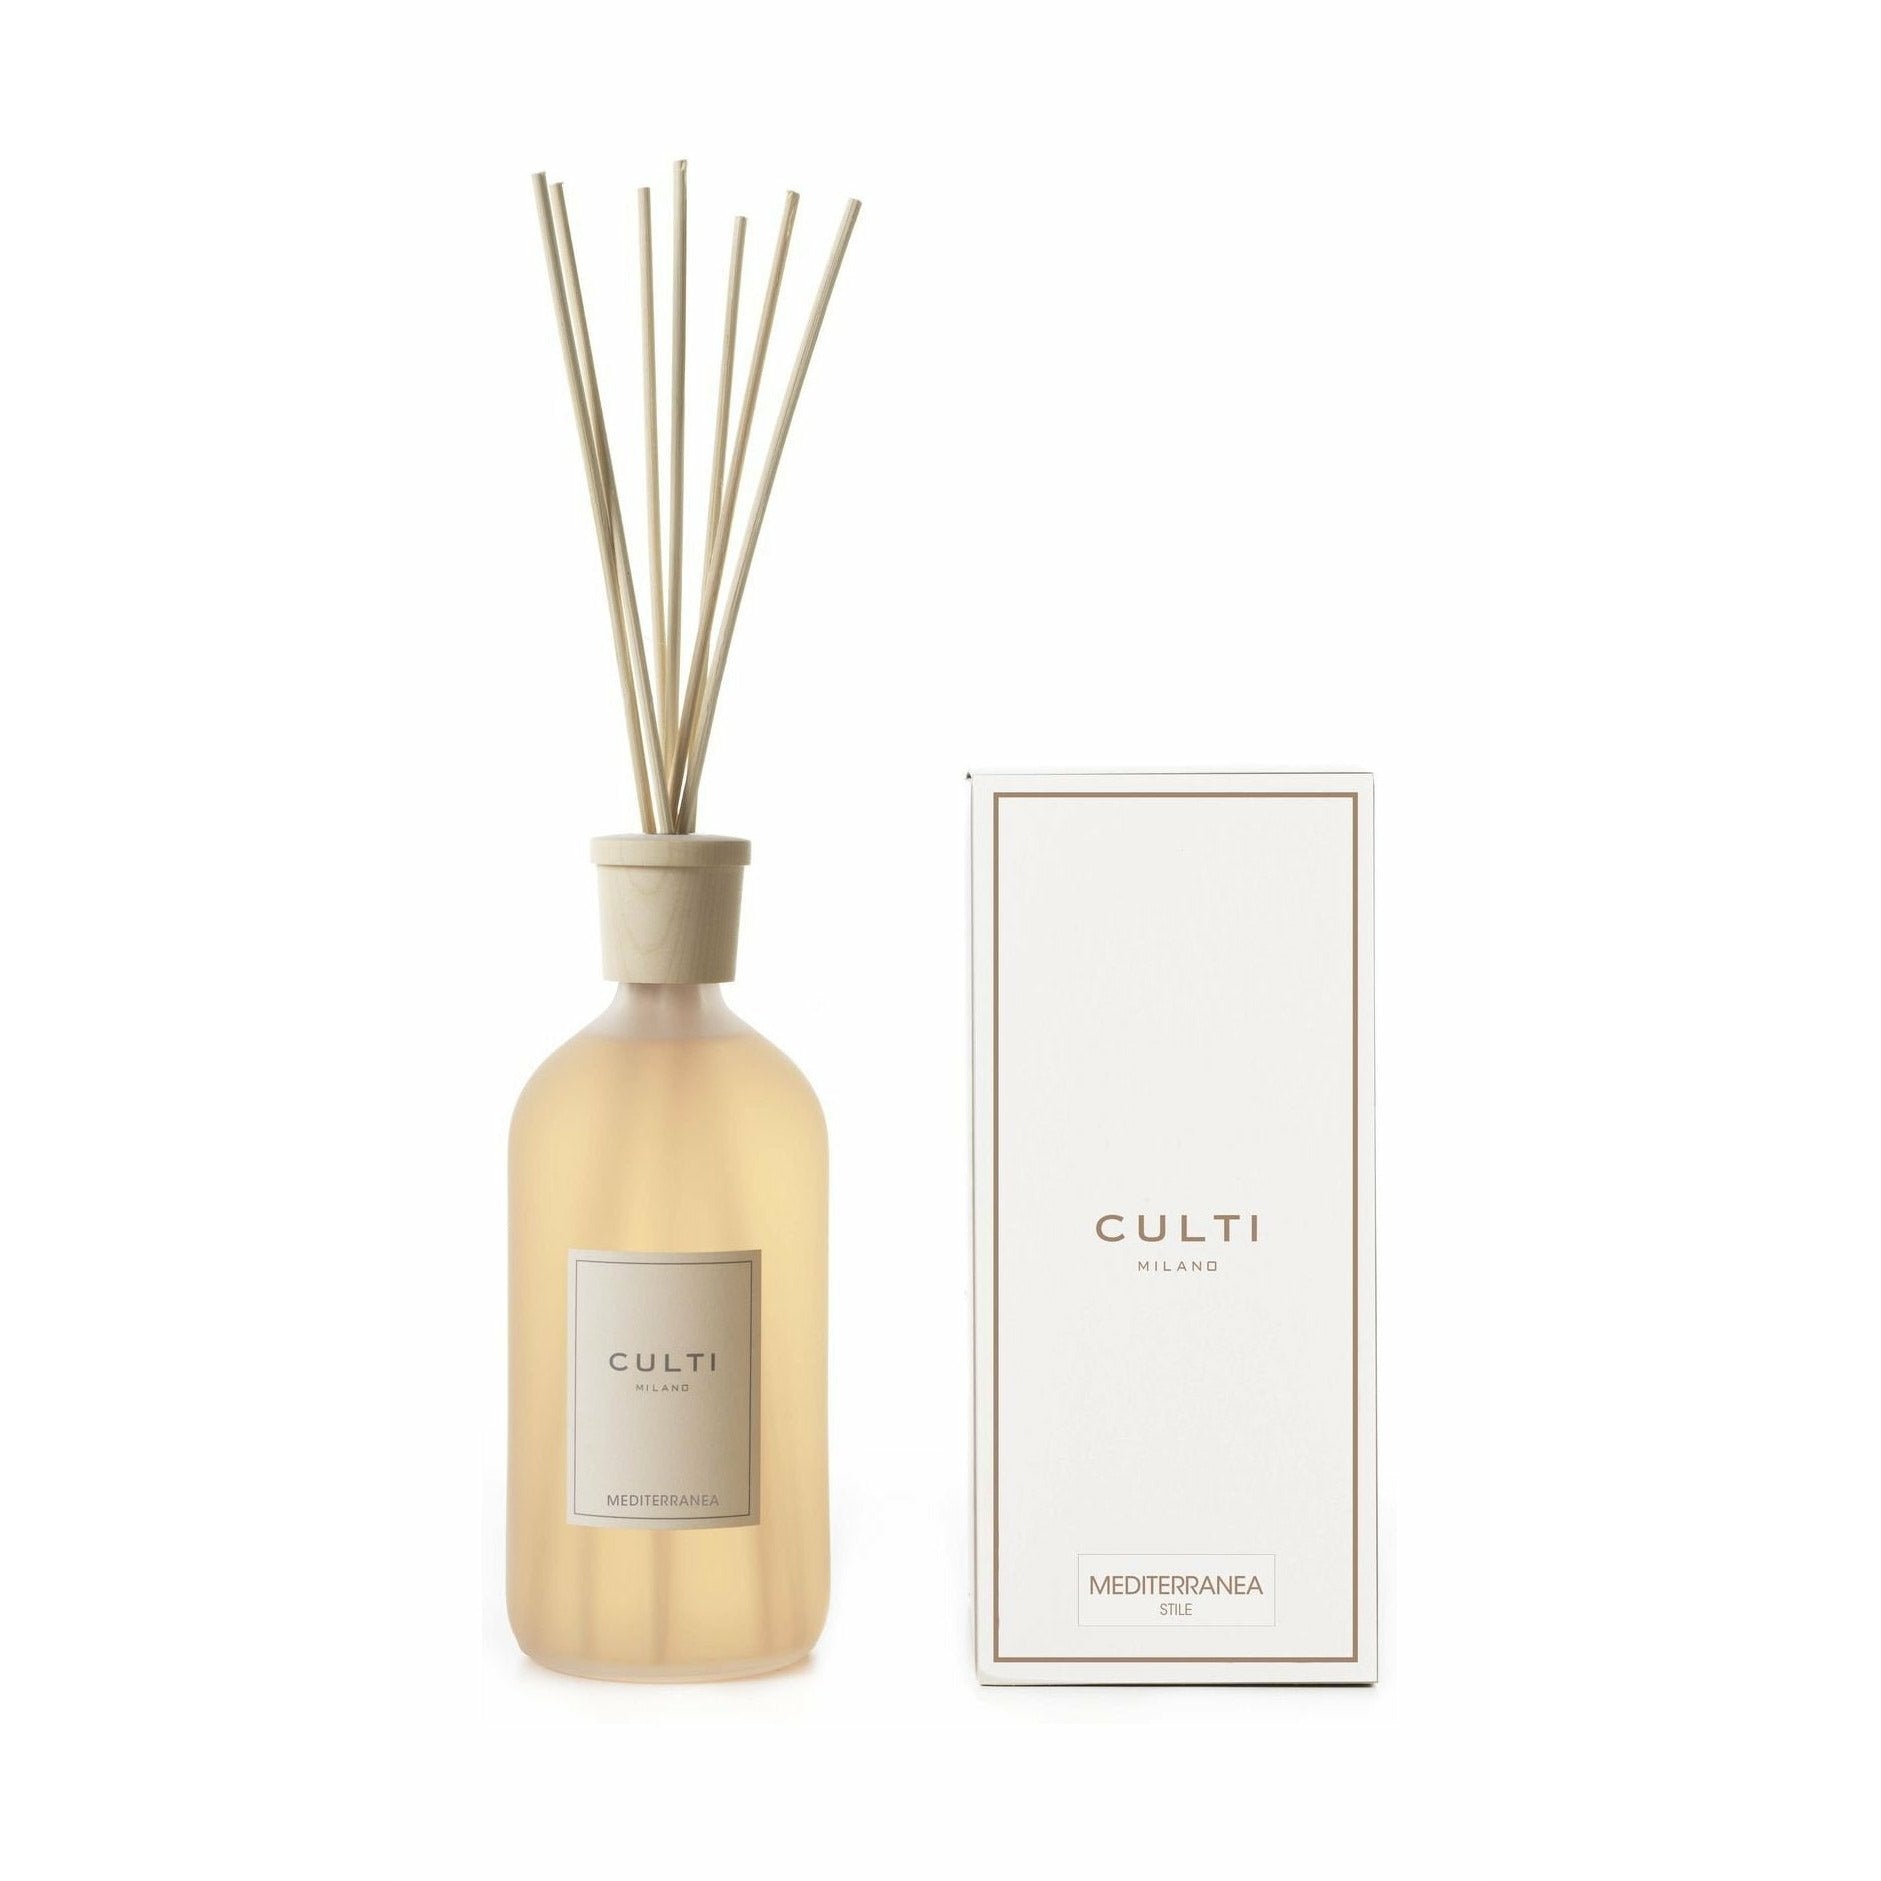 Culti Milano Stile Classic Fragrance Diffuser Mediterranean, 1 L